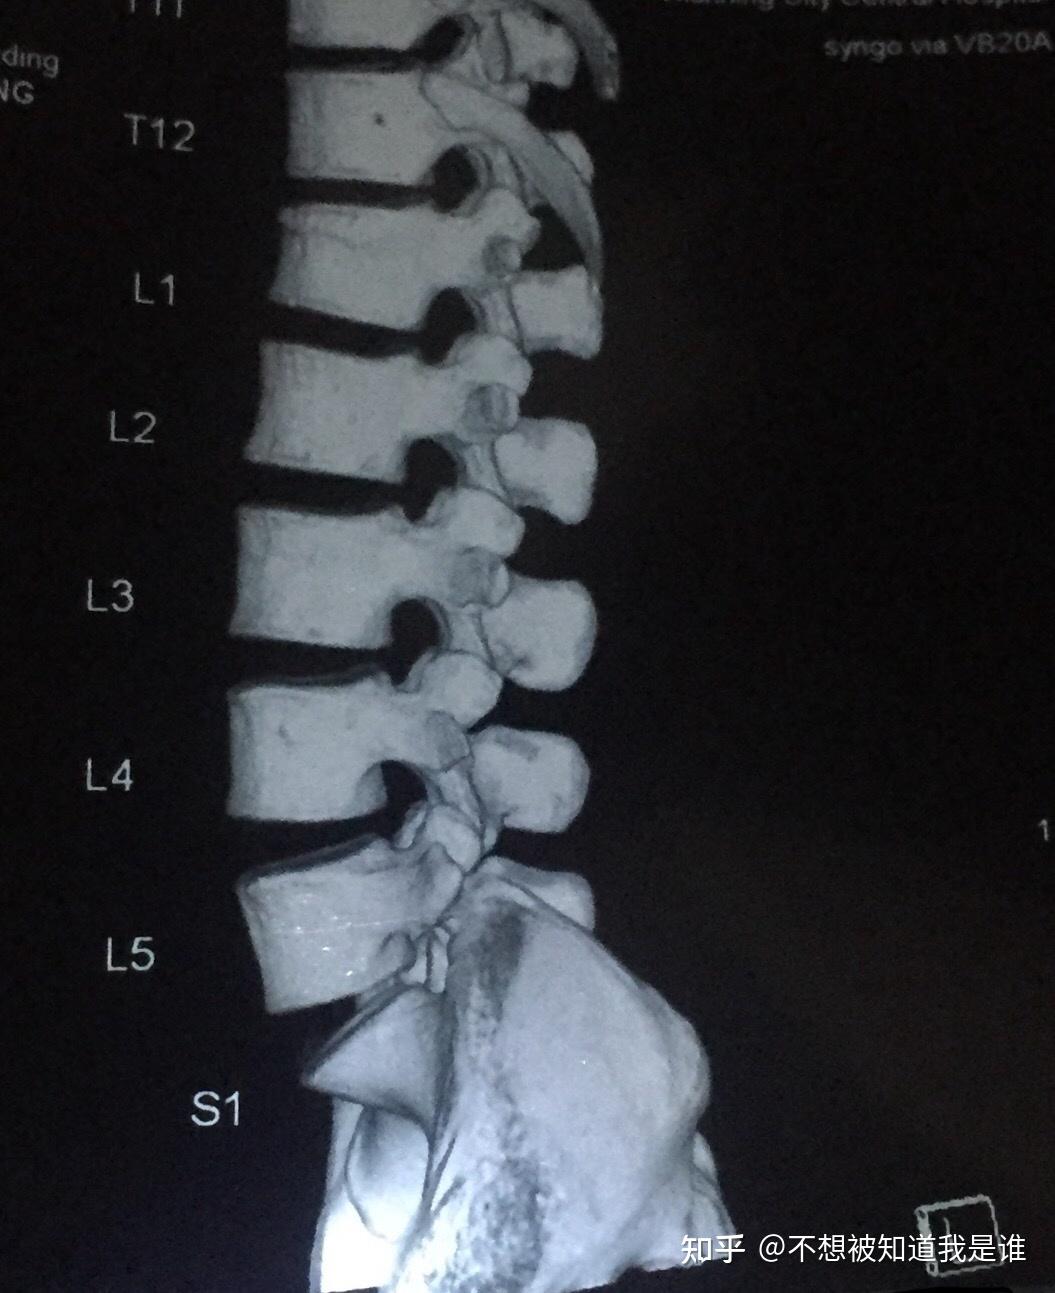 记录我女34岁的腰椎l1压缩性骨折尾椎骨折保守治疗整个恢复过程